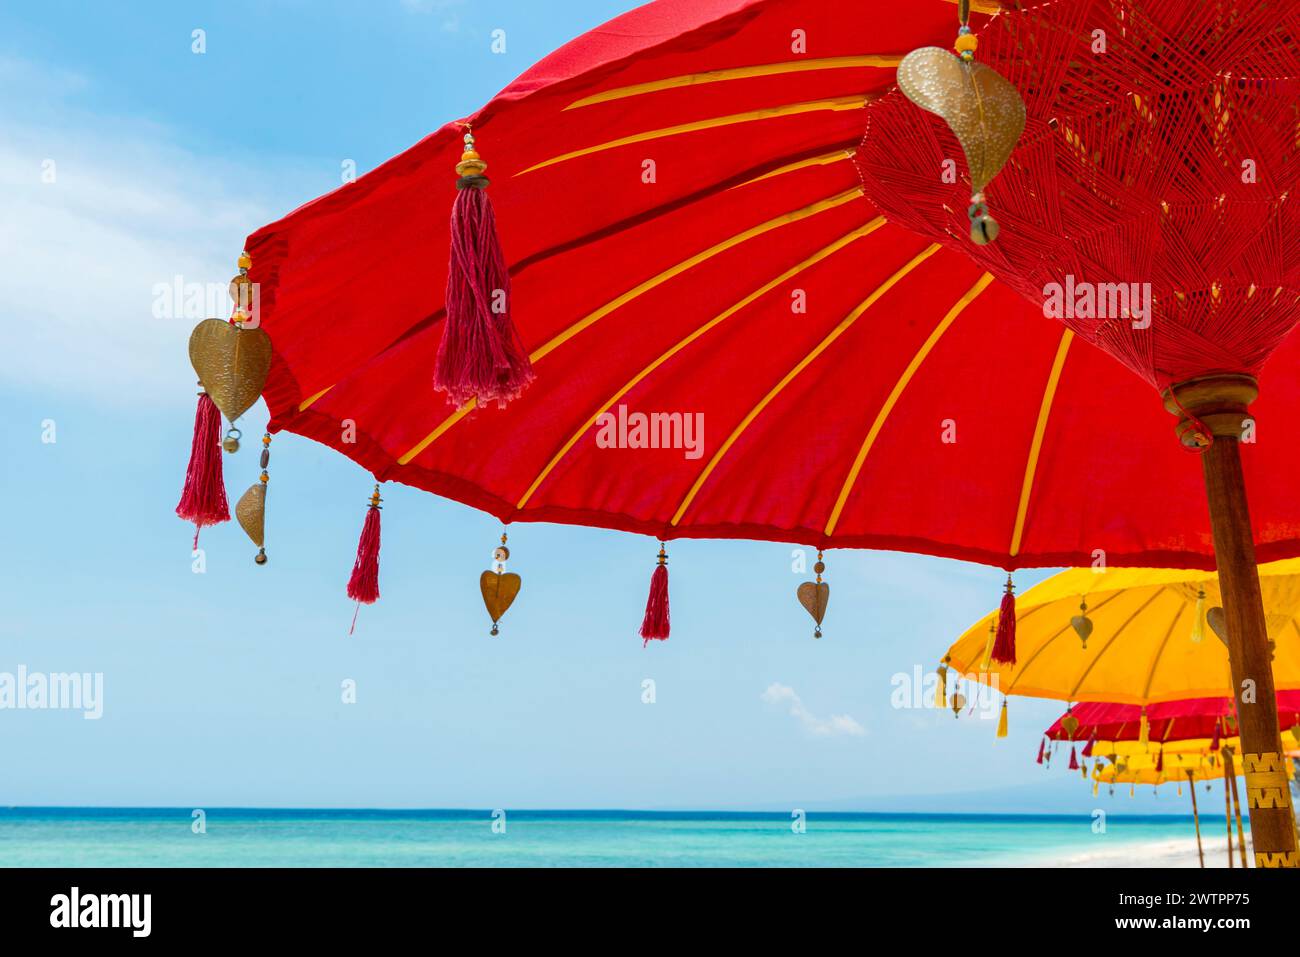 Tradizionale parasole balinese del tempio come ombrellone, induismo, simbolo, vacanza al mare, protezione, protezione solare, balinese, cultura, rosso, giallo, sole Foto Stock